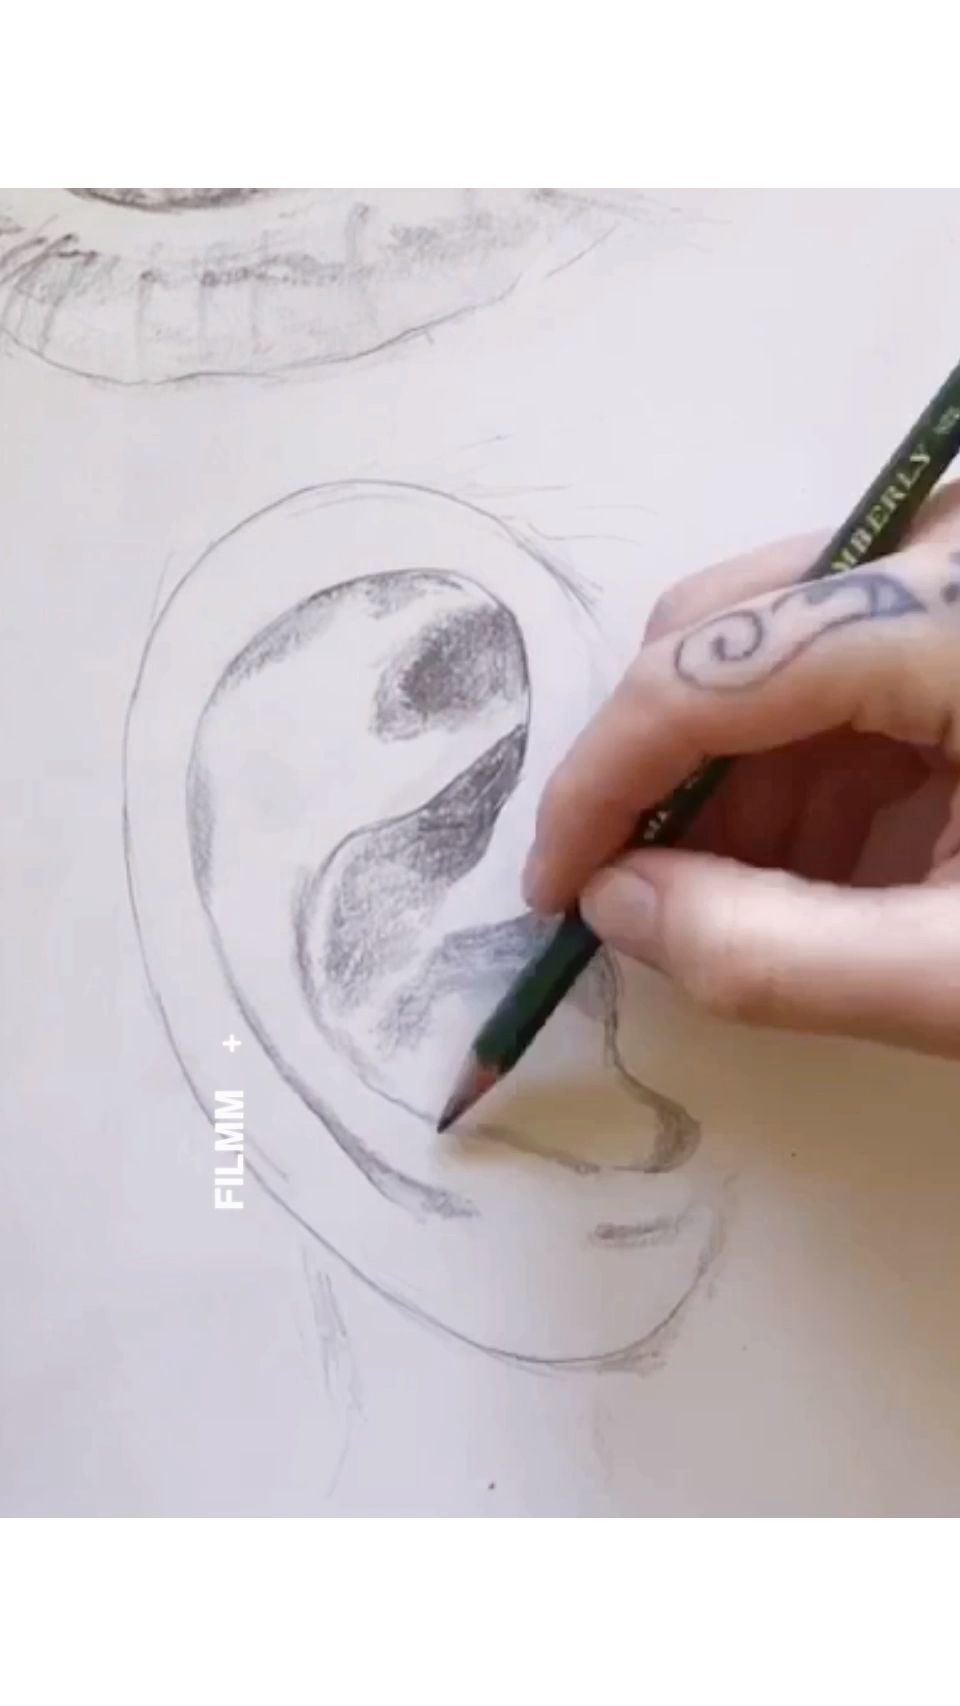 21 beauty Drawings videos ideas